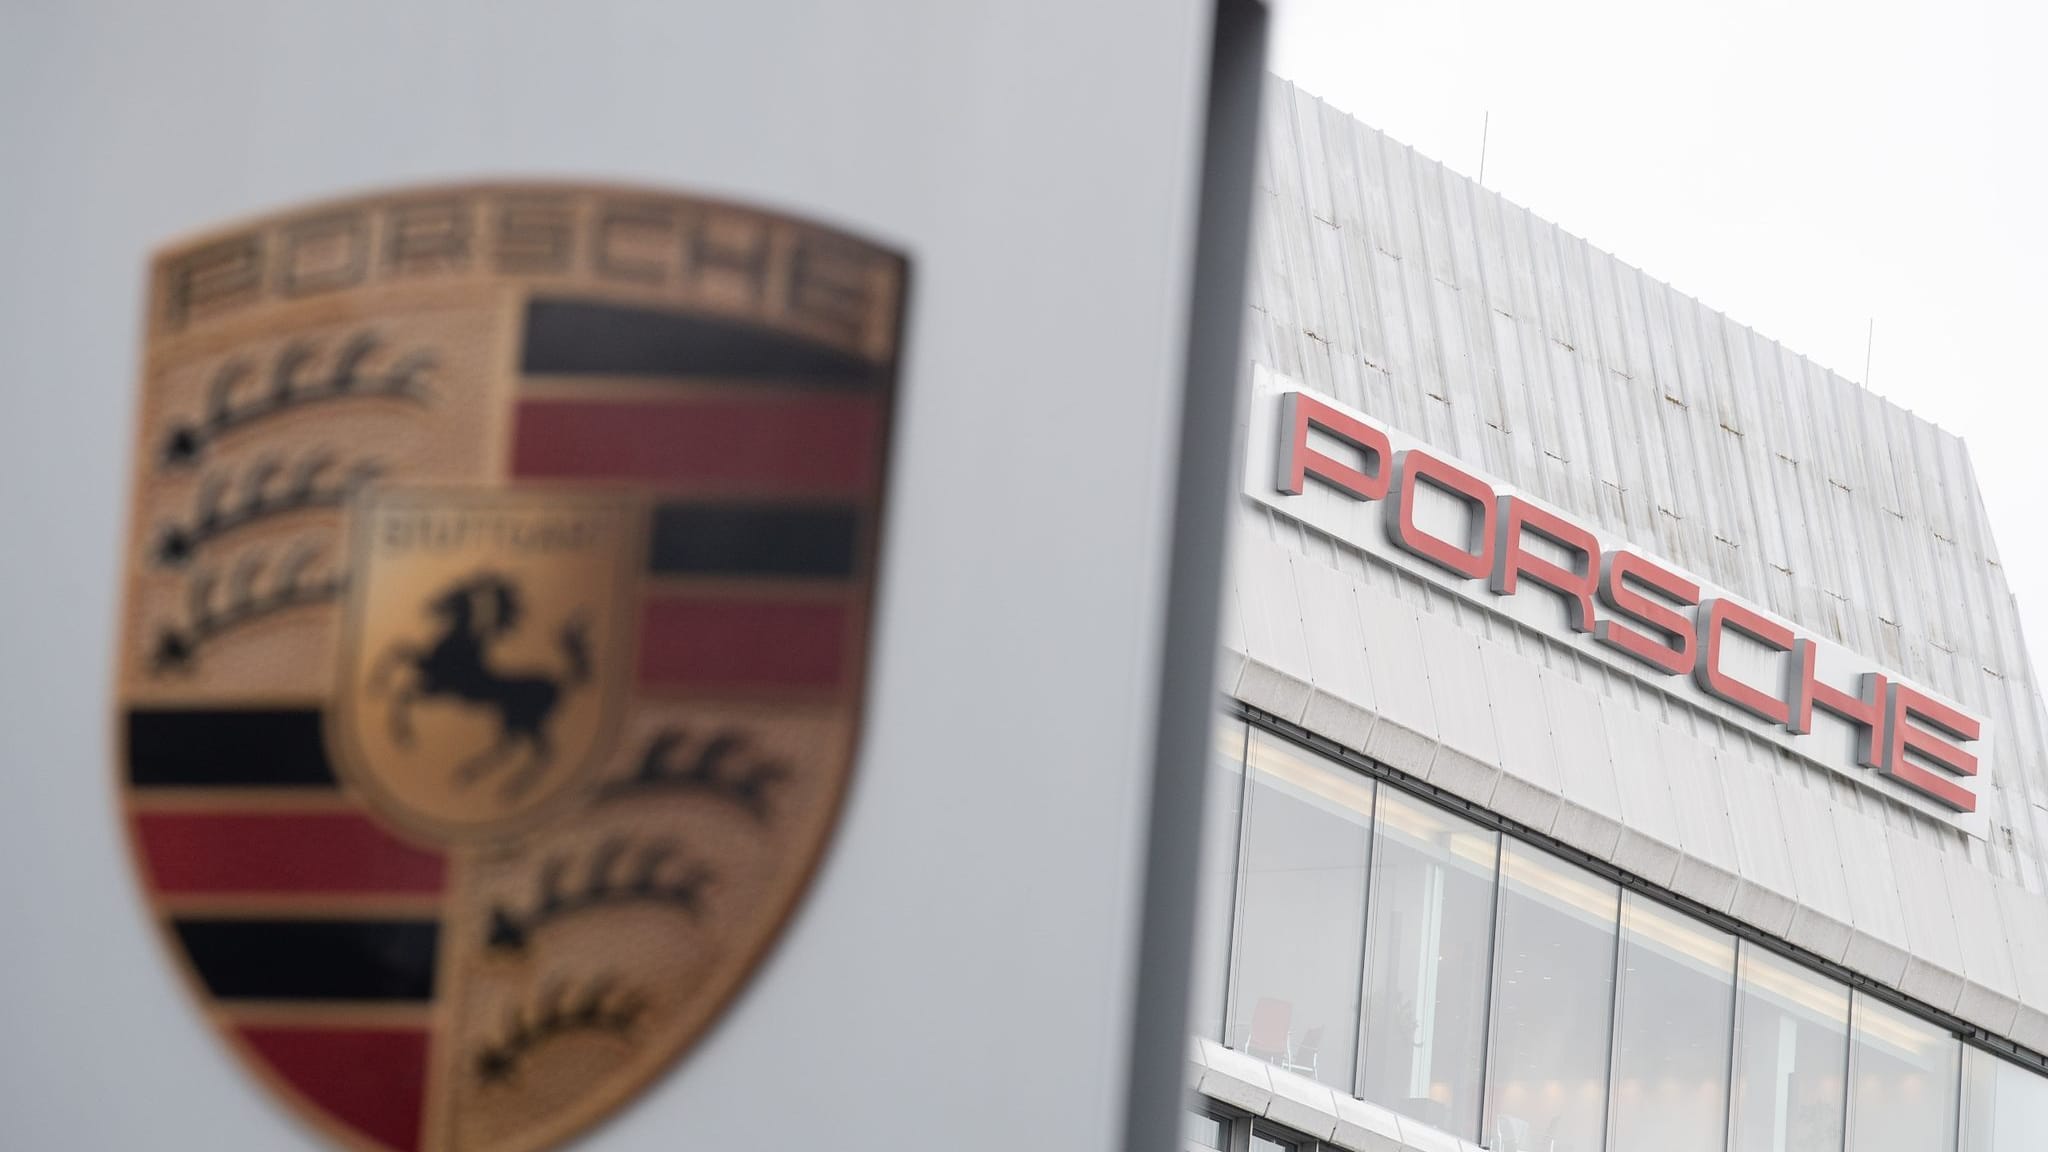 Porsche-Teststrecke: Ausbaupläne in Italien vorerst gestoppt